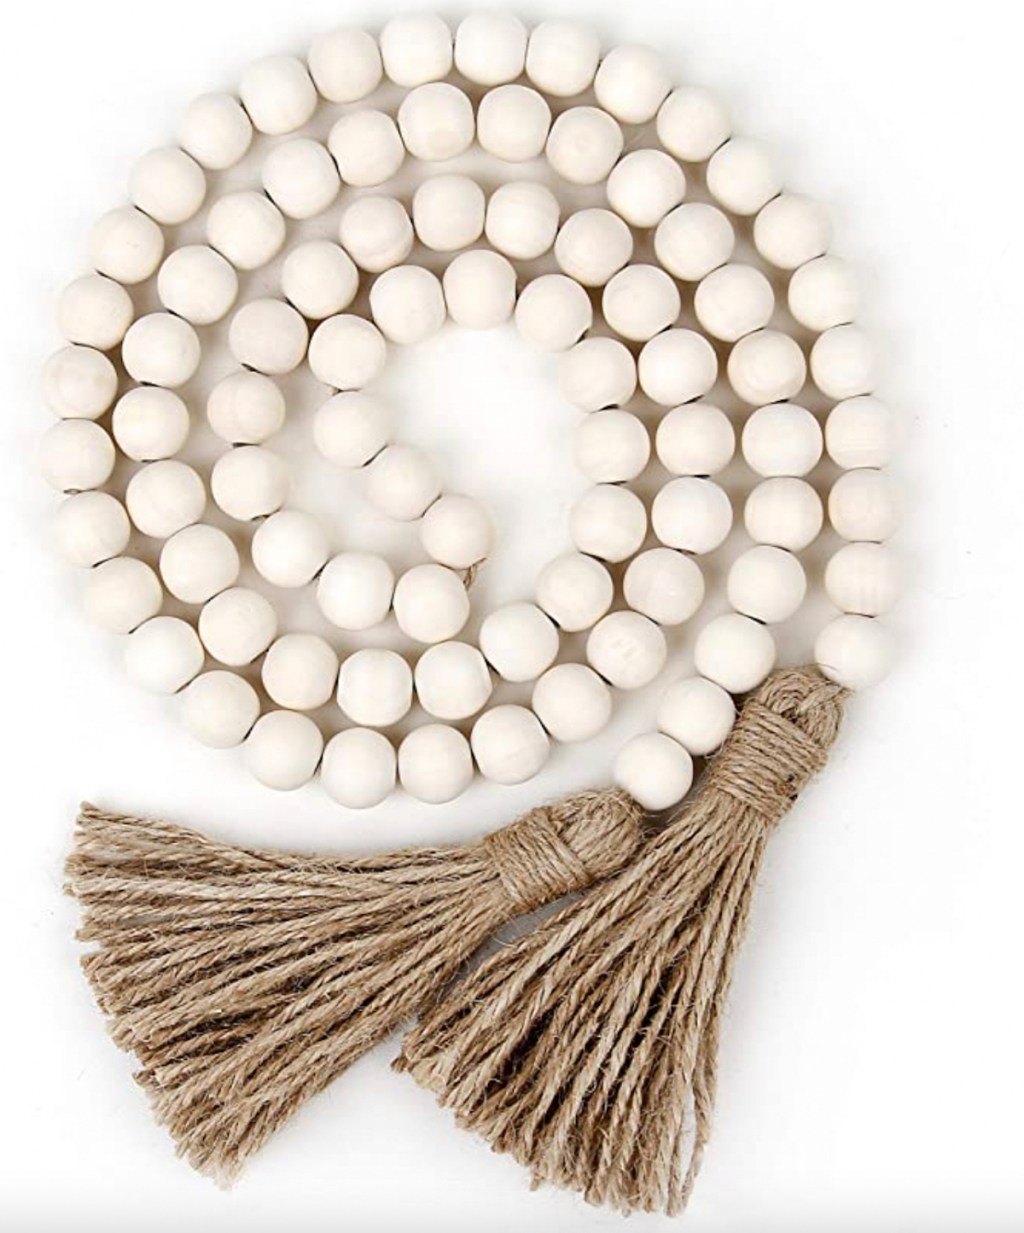 stock photo of white wood bead garland 